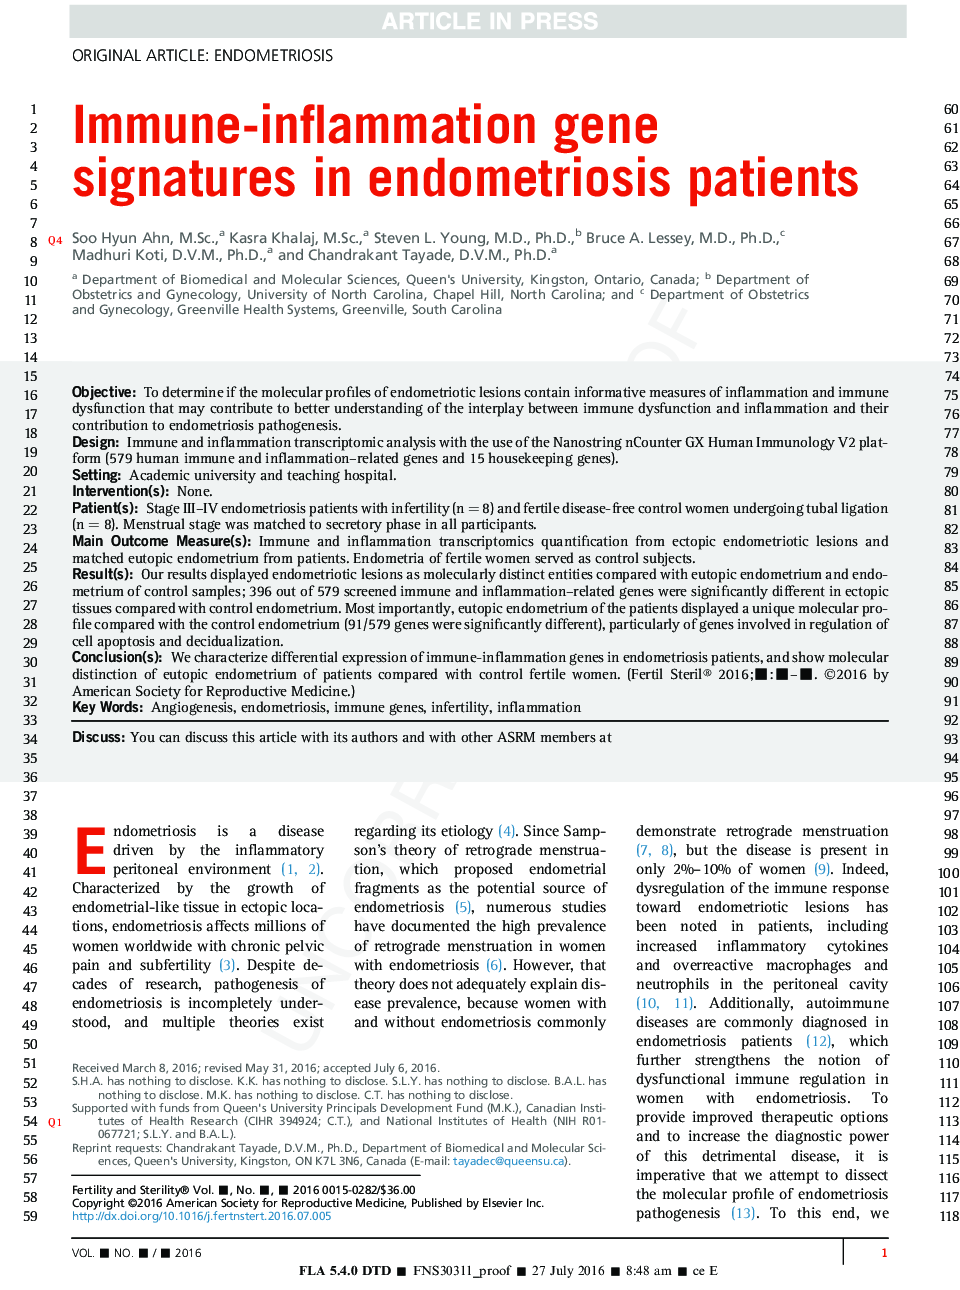 امواج ژن التهاب ایمنی در بیماران مبتلا به آندومتریوز 